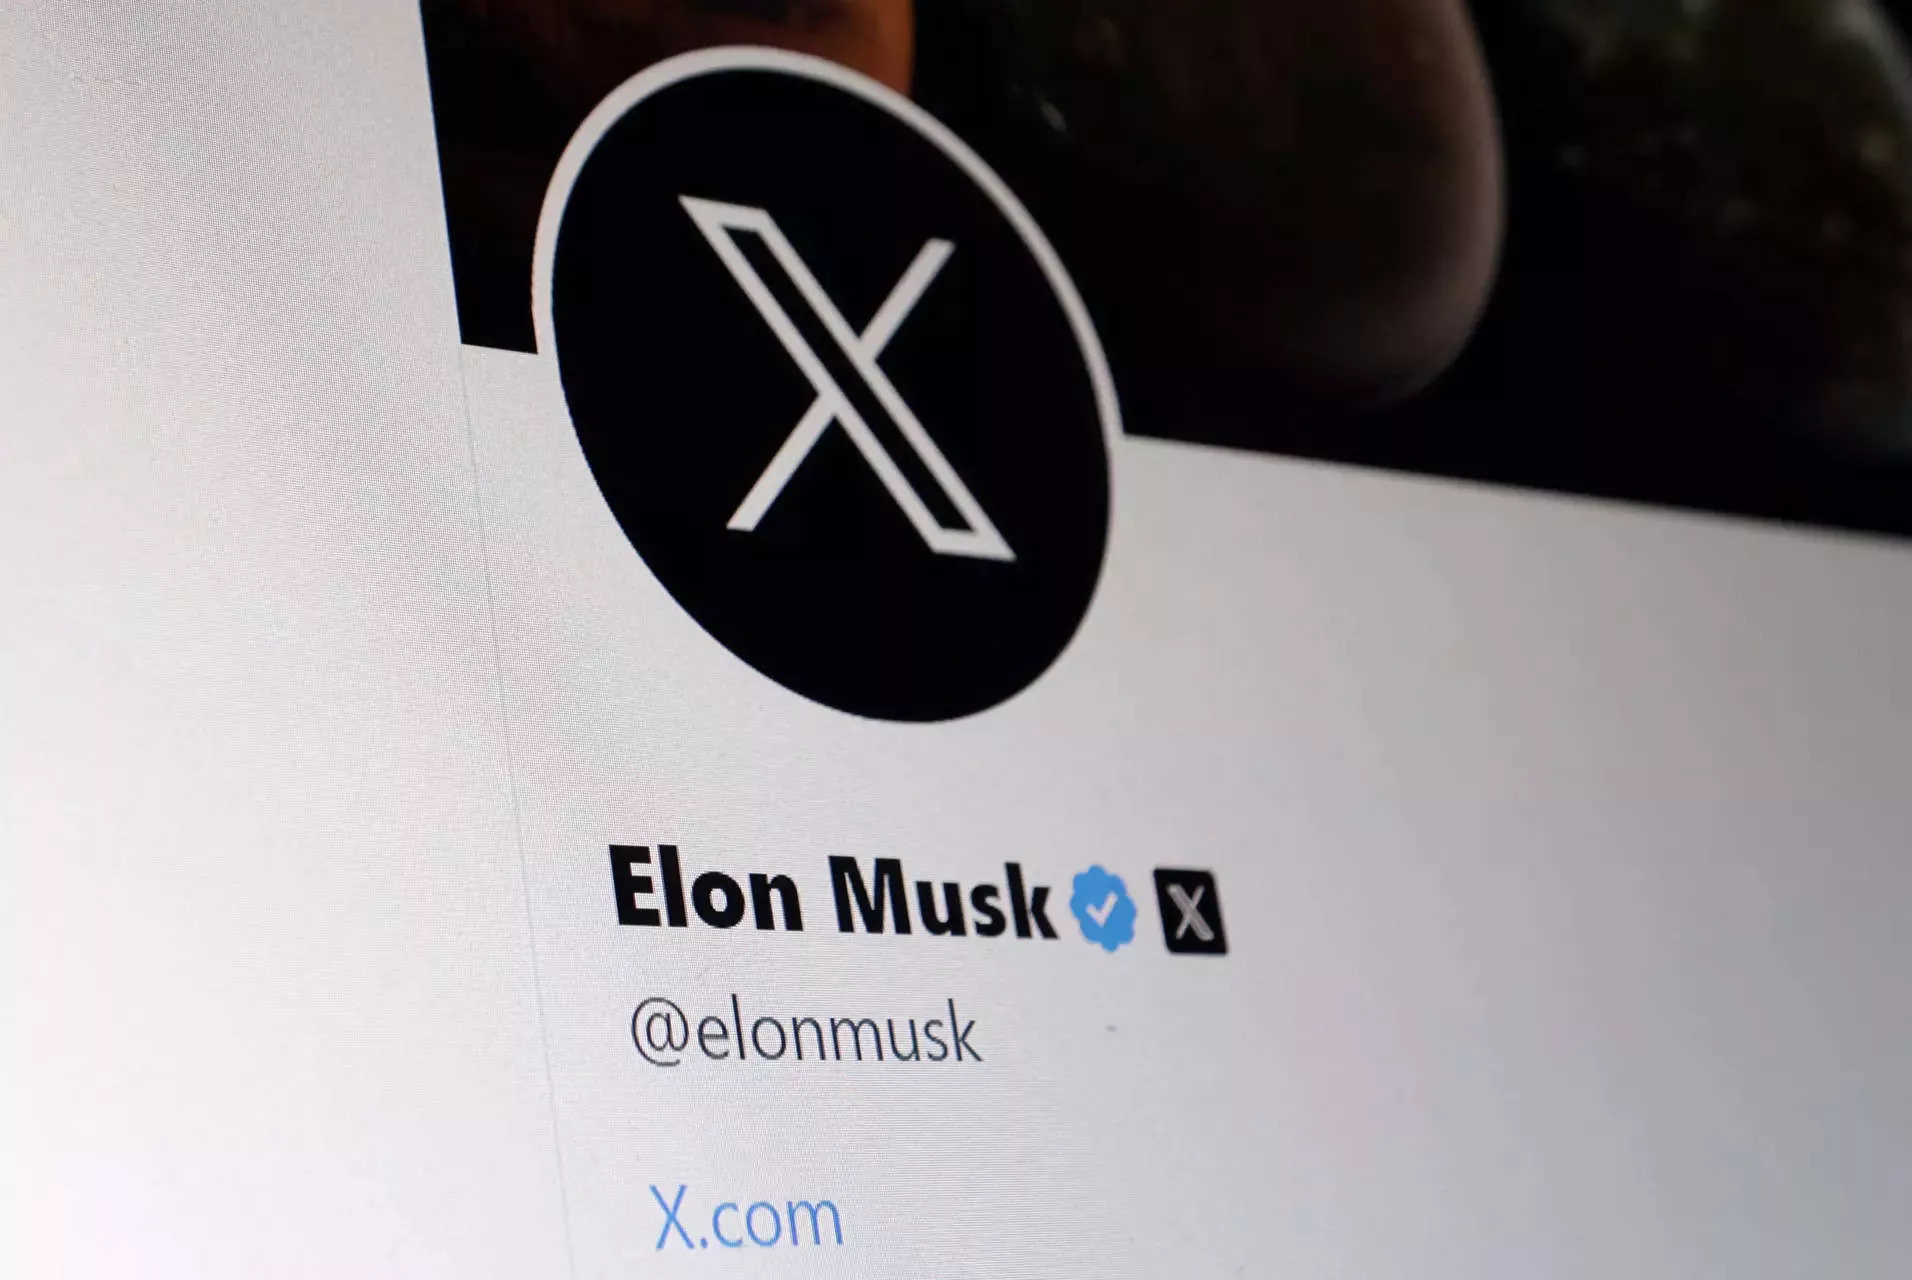 Elon Musk reconhece possibilidade de fracasso de sua rede social X (antigo Twitter) | Brasil 247